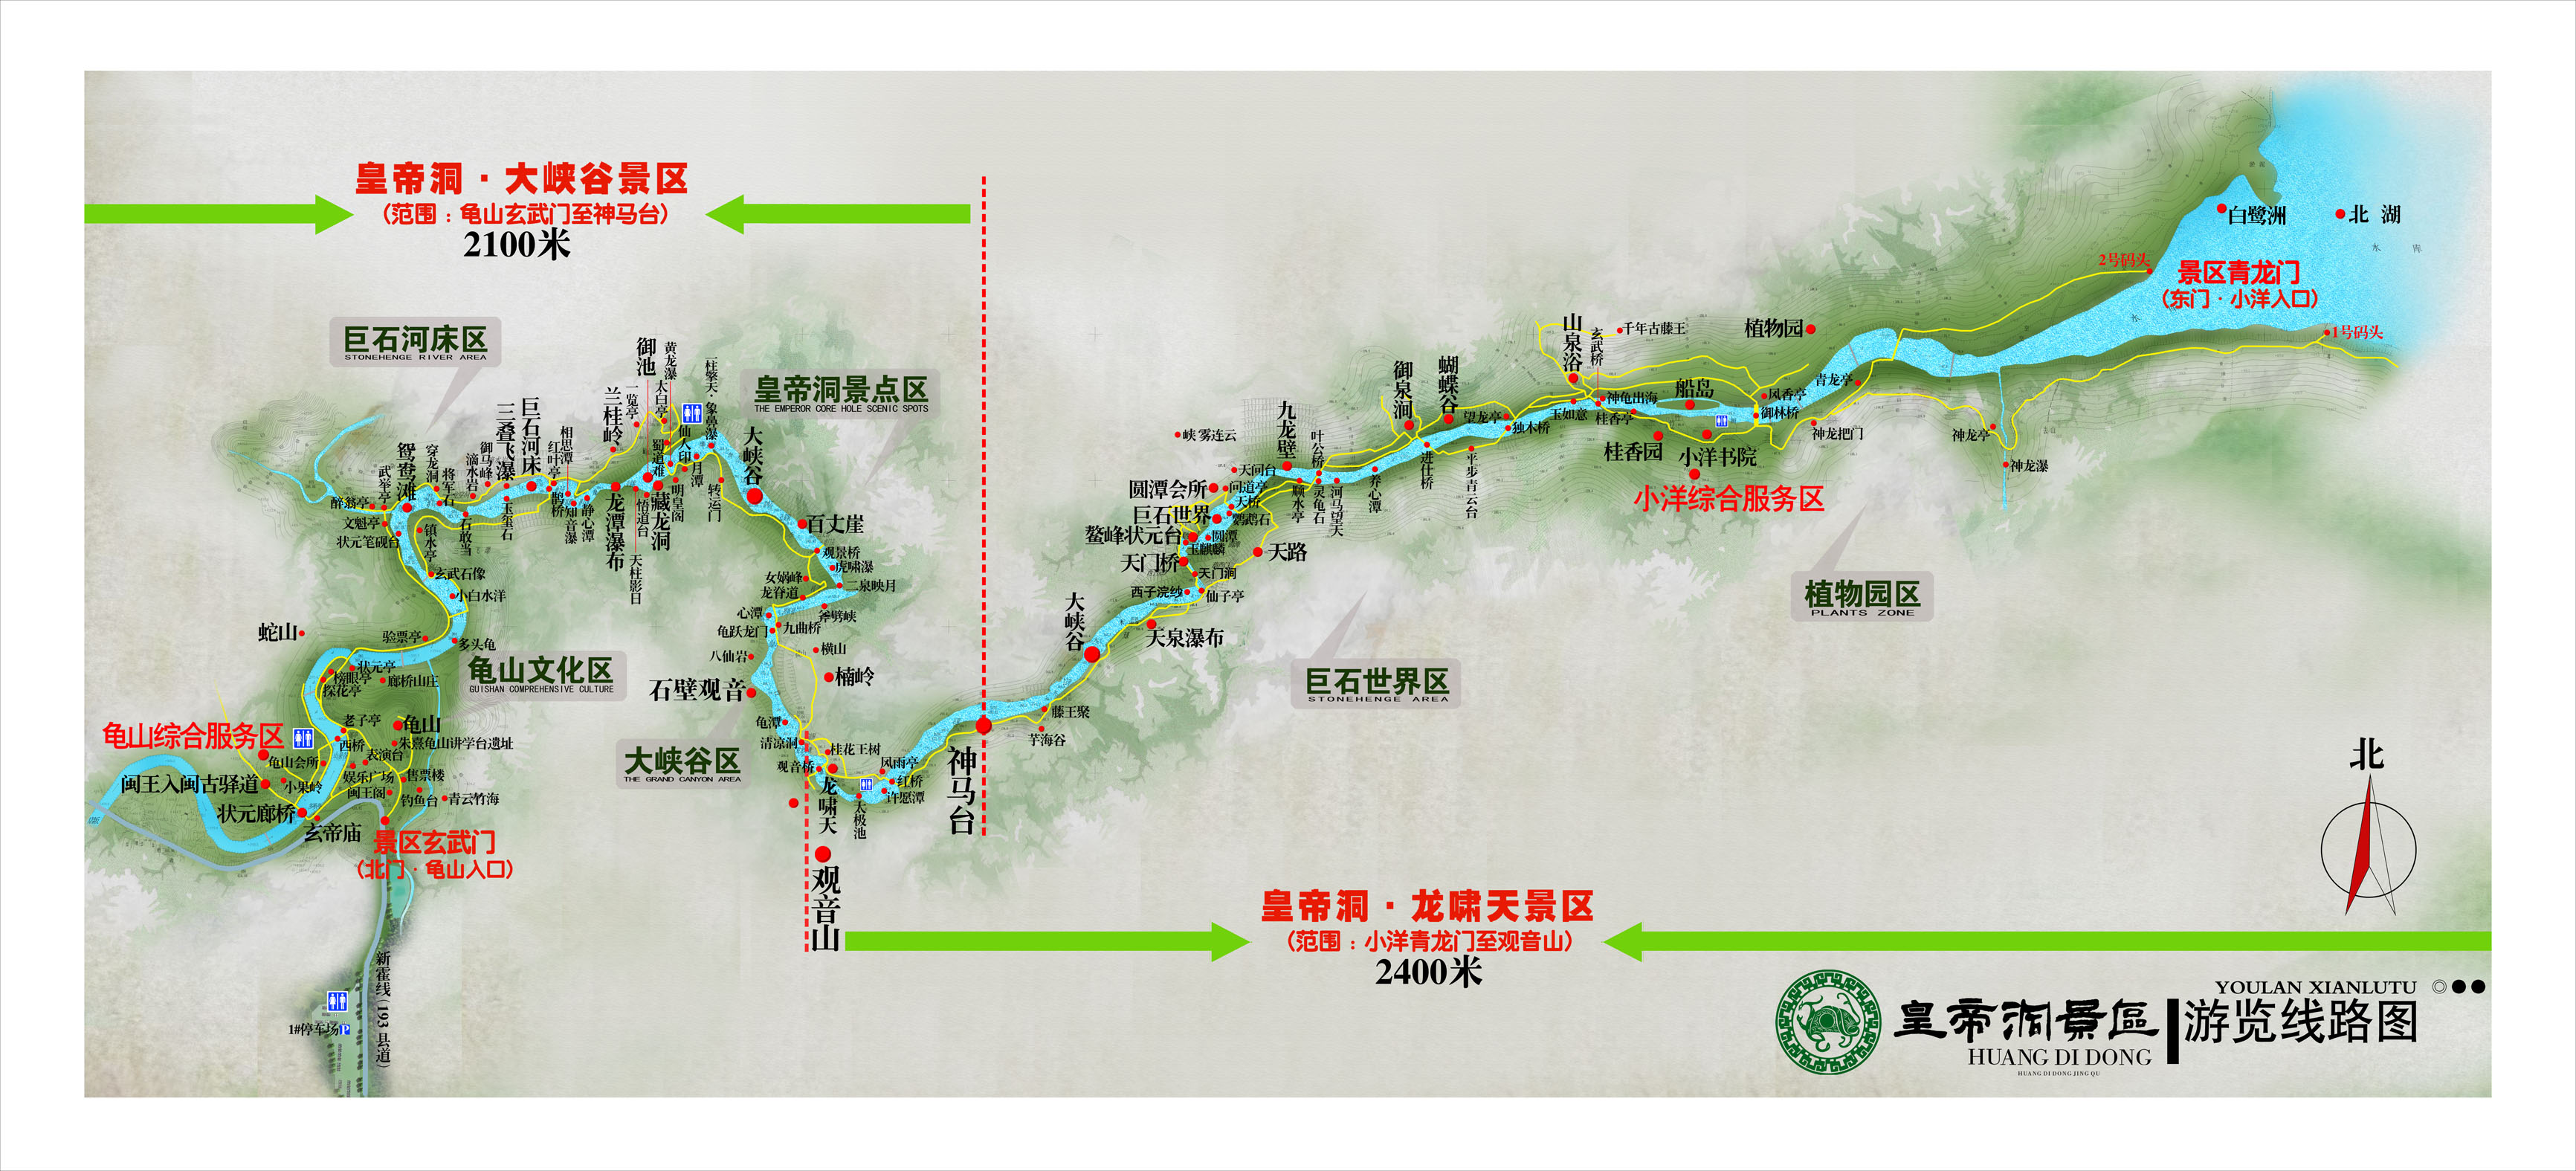 南京手绘旅游路线图